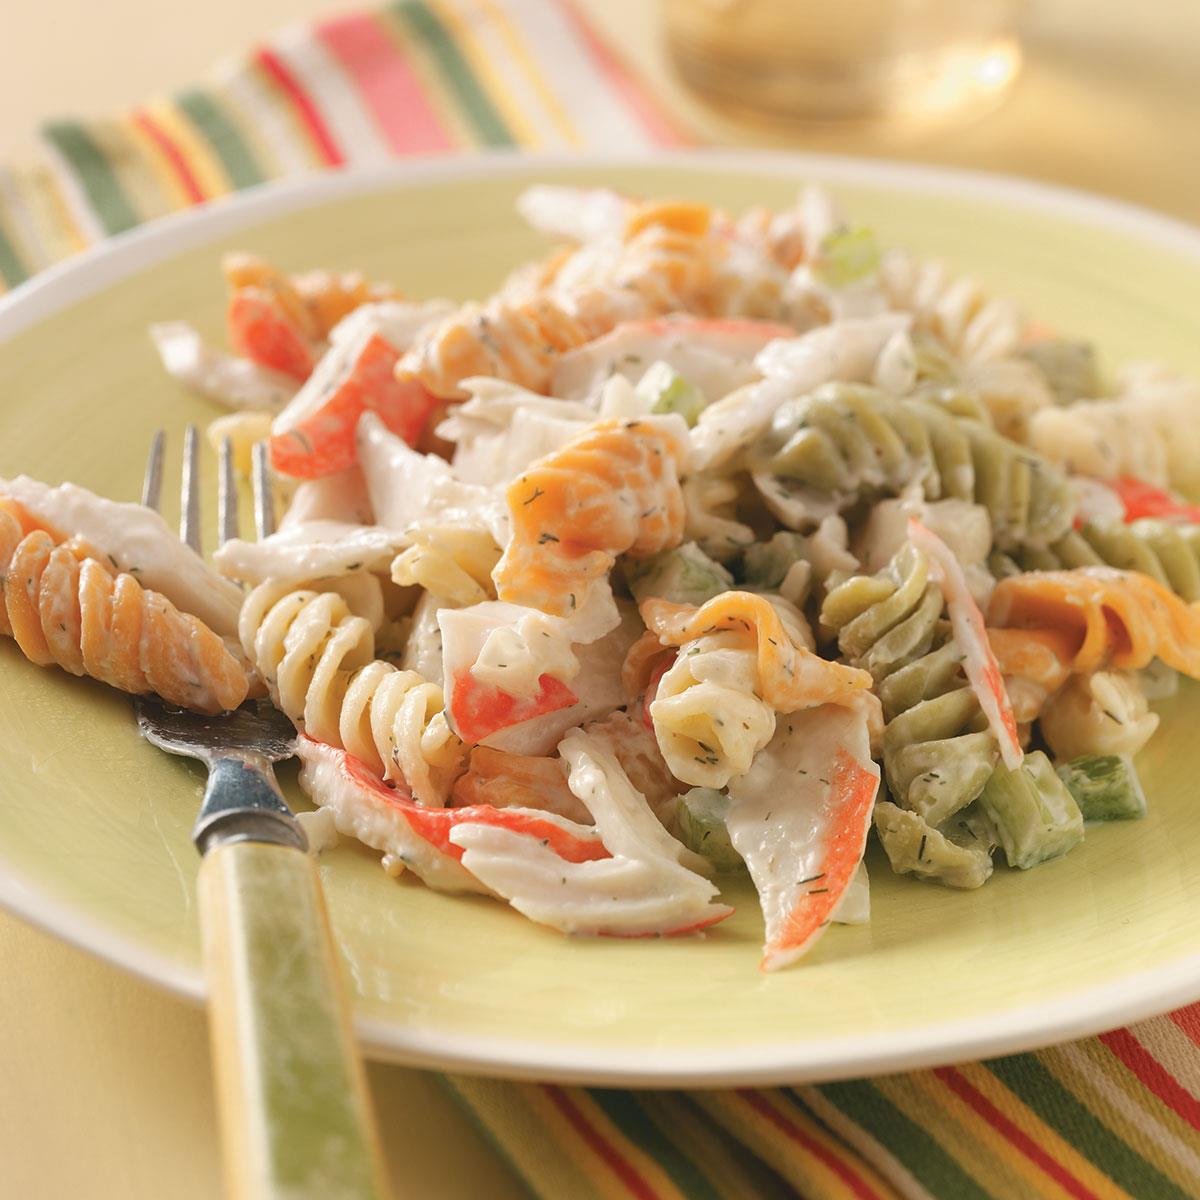 imitation crab pasta salad recipe